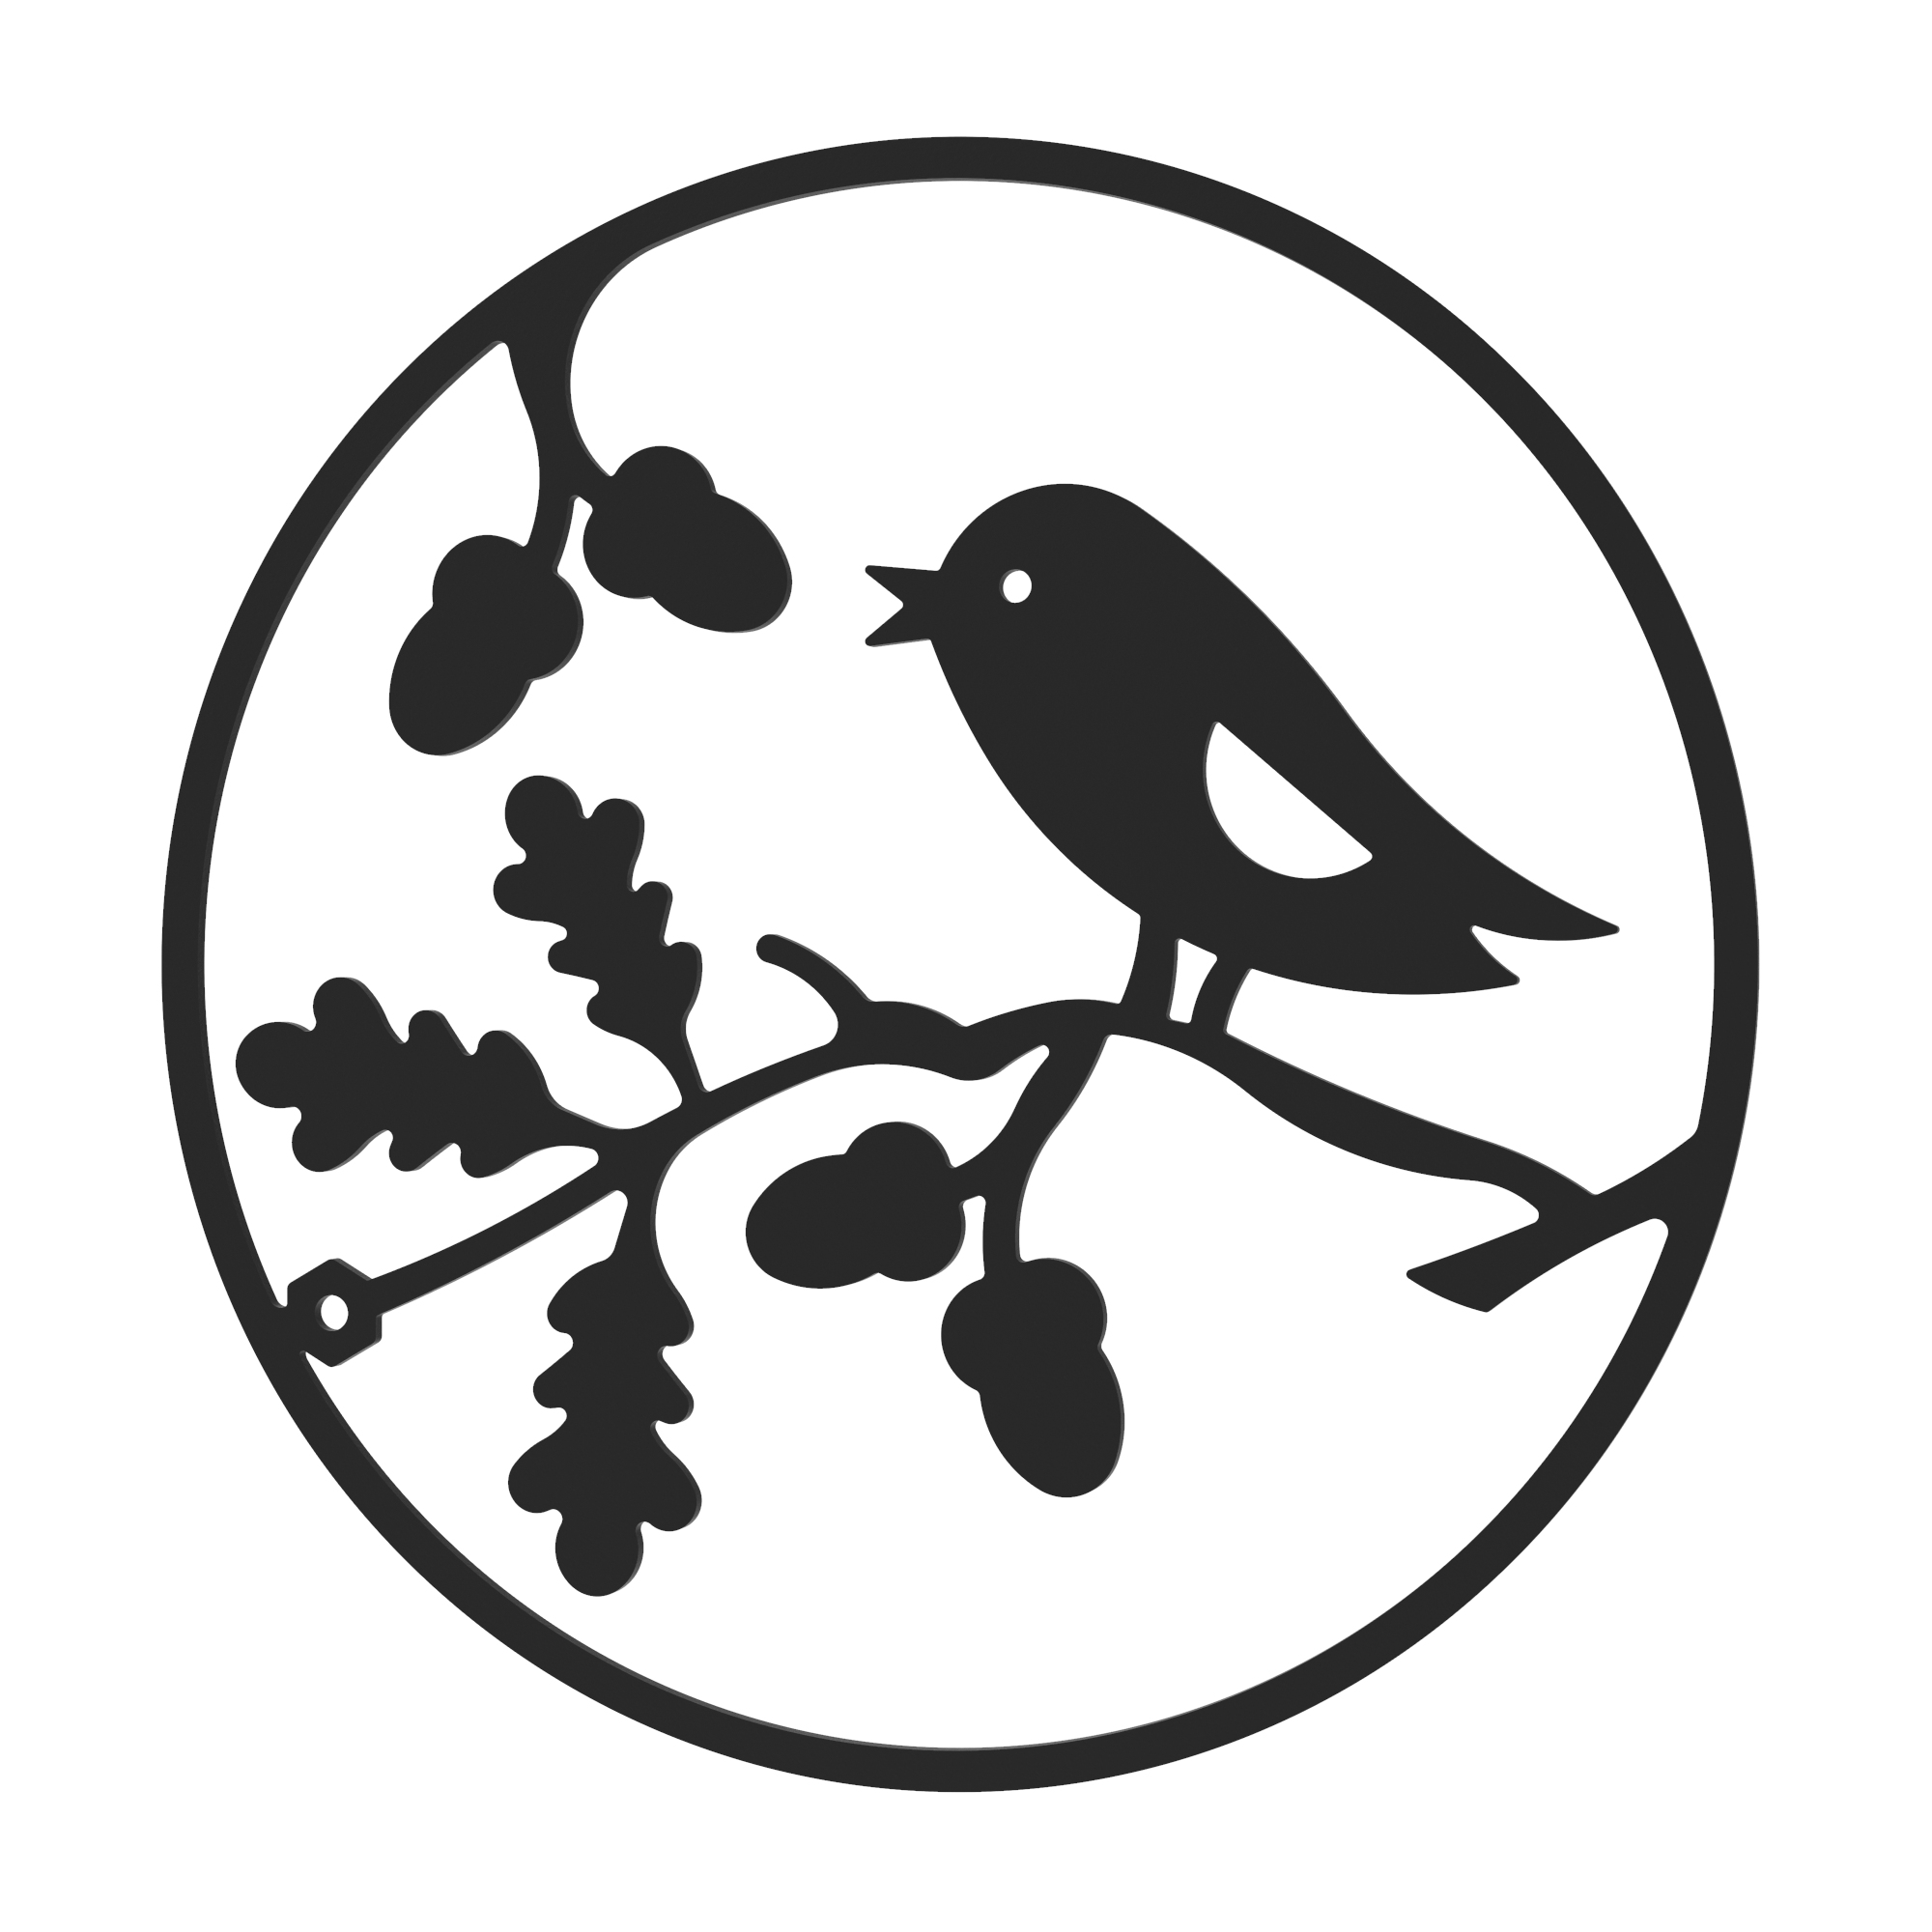 Dekorationskranz BIRDS aus Metall, schwarz, Motiv Herbst